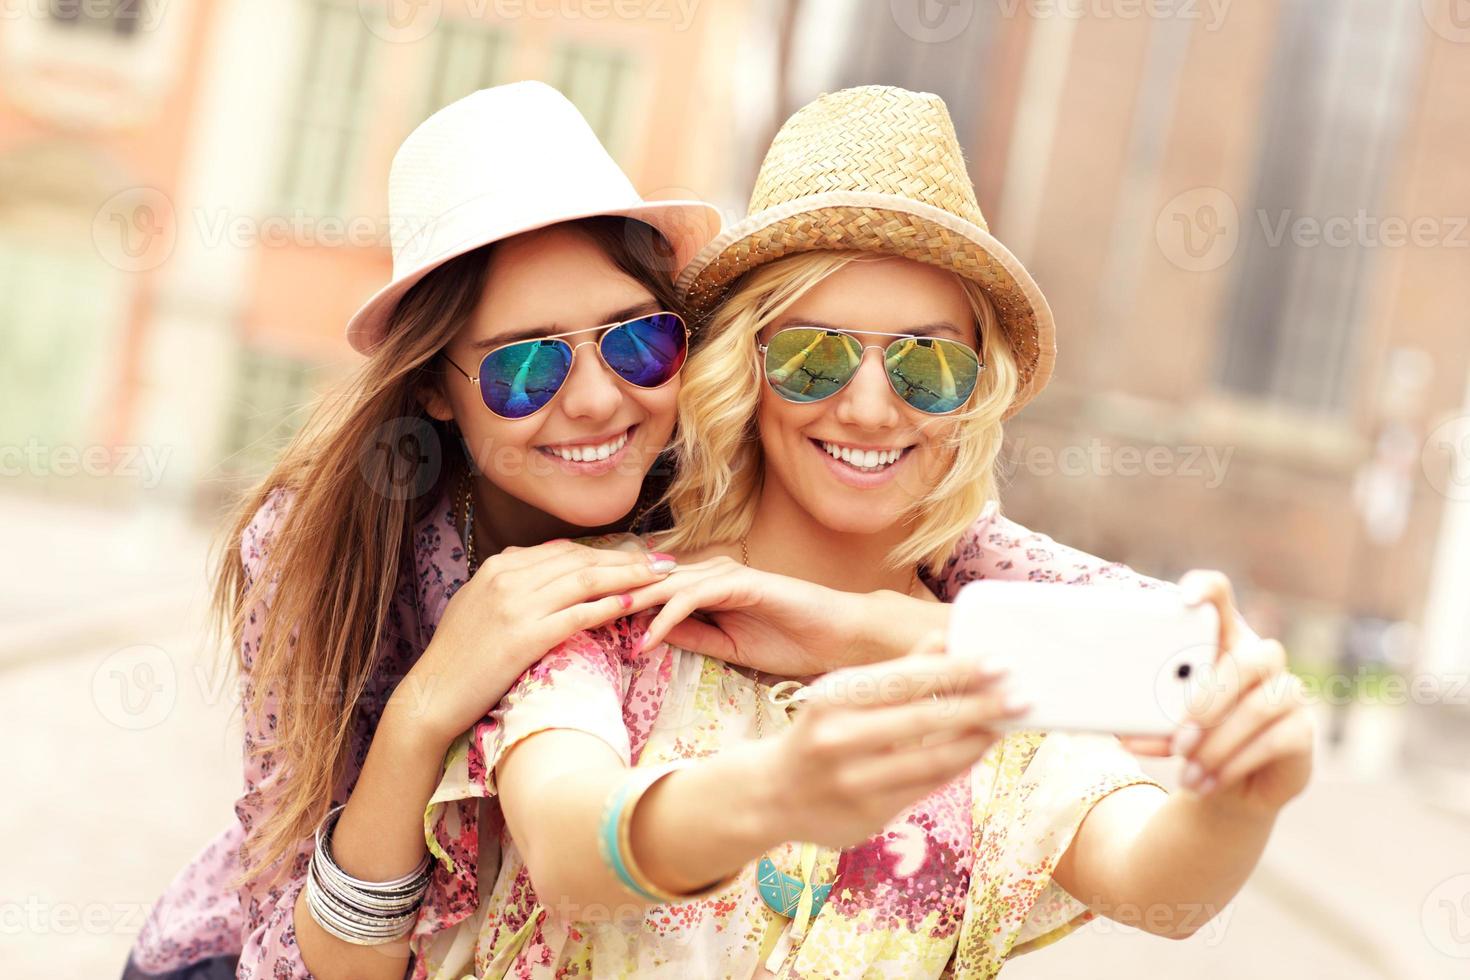 Two happy girl friends taking selfie photo